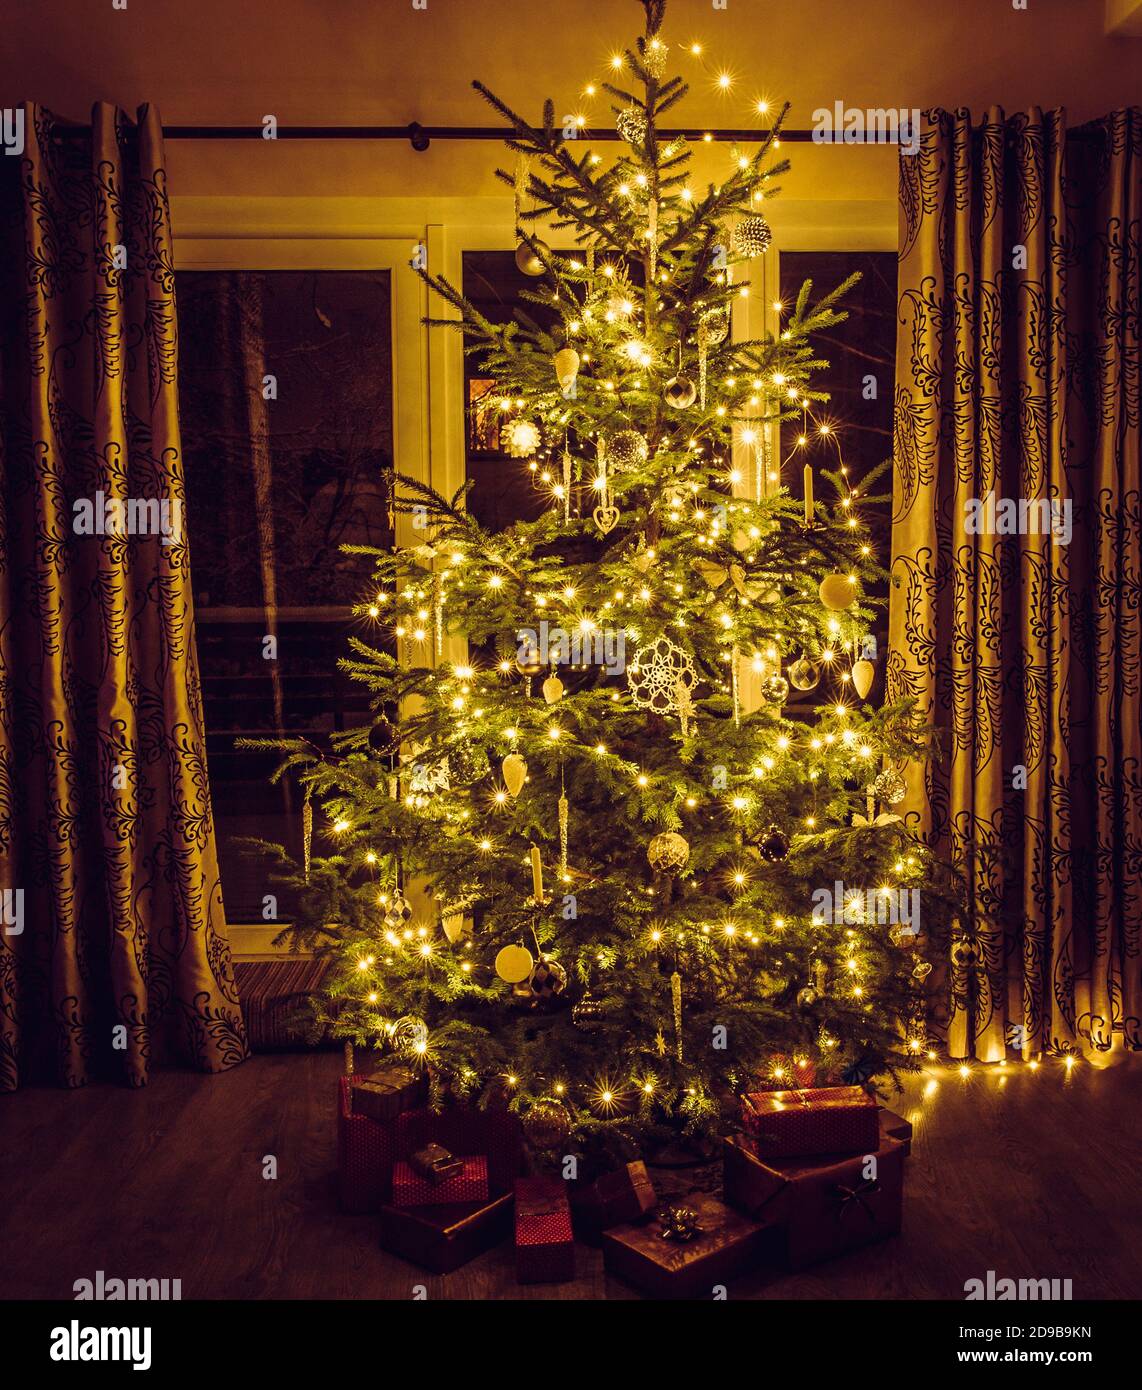 Albero di Natale con luci a corda calde gialle e sicli bianchi e ornamenti a forma di fiocco di neve. Regali rosso imballati sotto l'albero. Foto Stock